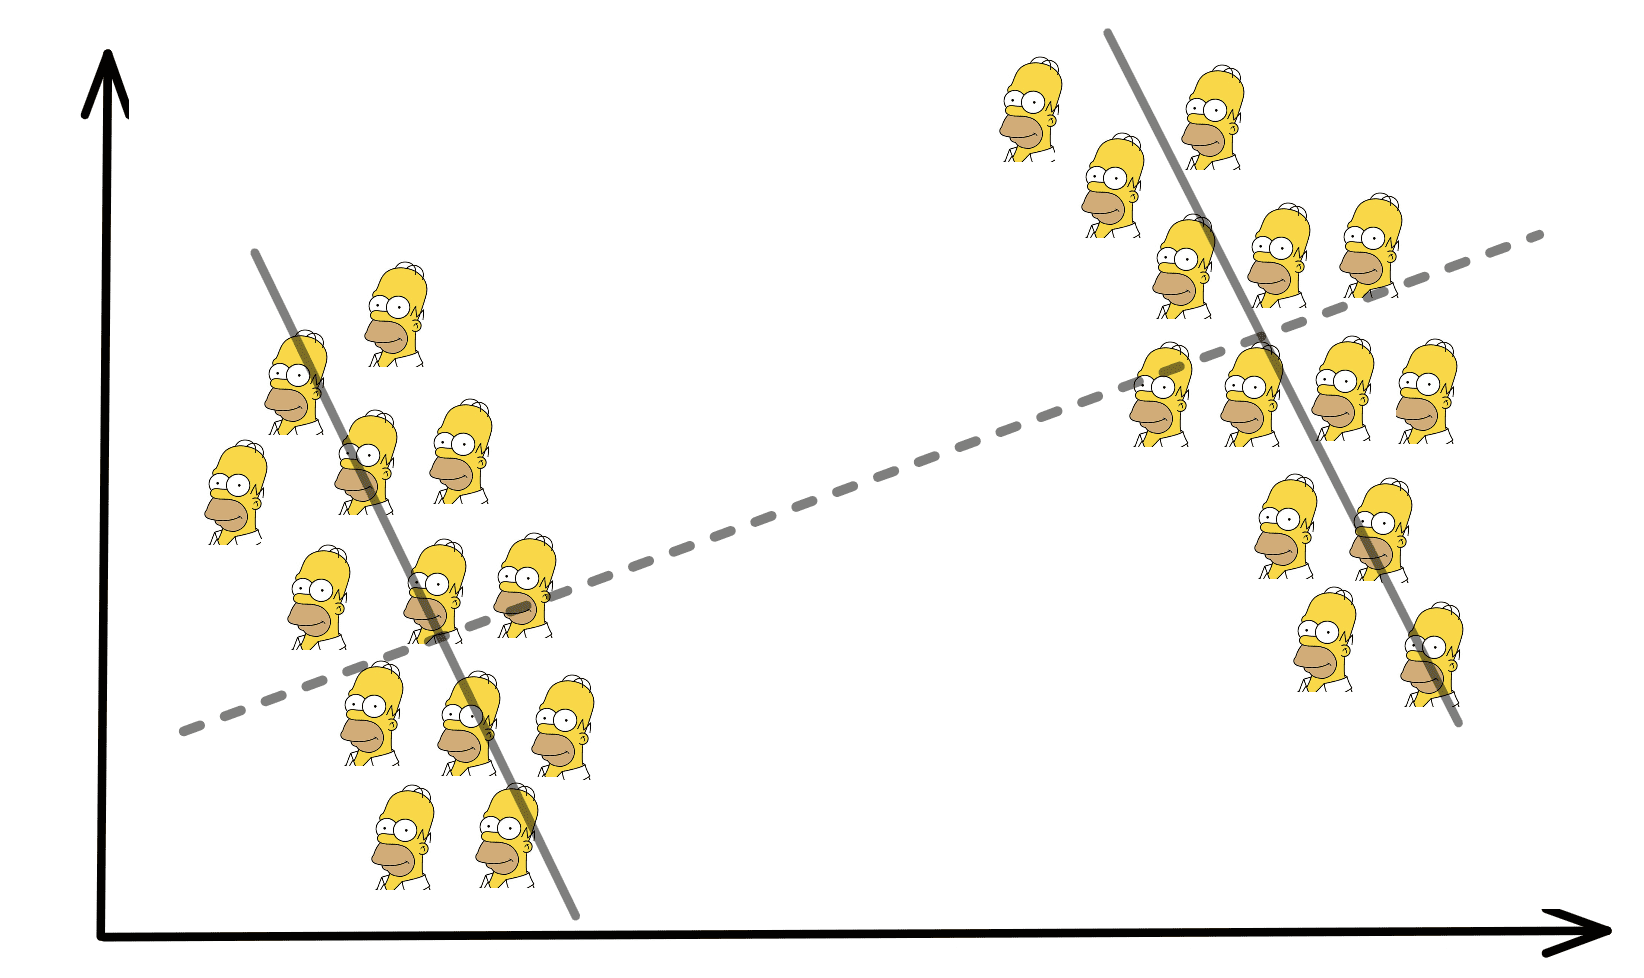 Simpsons Paradoxon und seine Auswirkungen auf die Datenwissenschaft